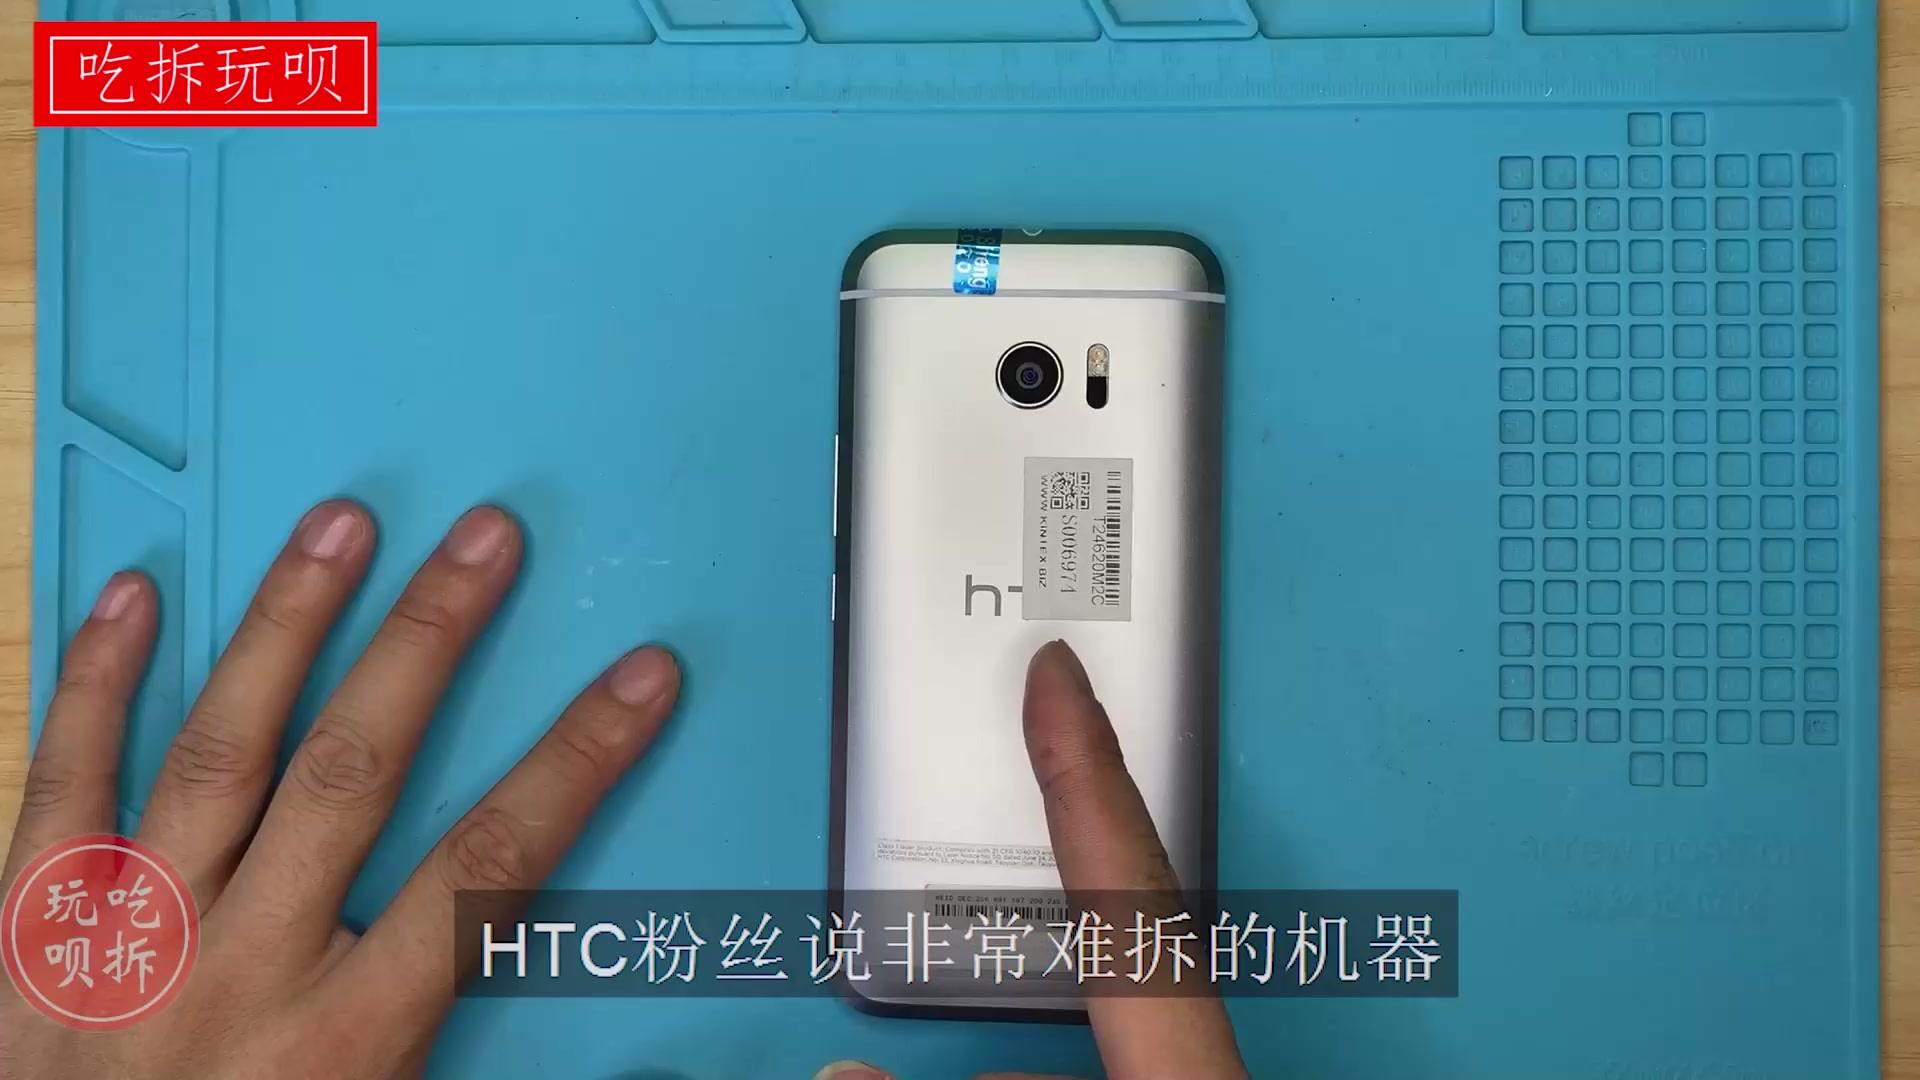 粉丝说很难拆解的HTC10手机 让我尝试给它换电池 看能否翻车